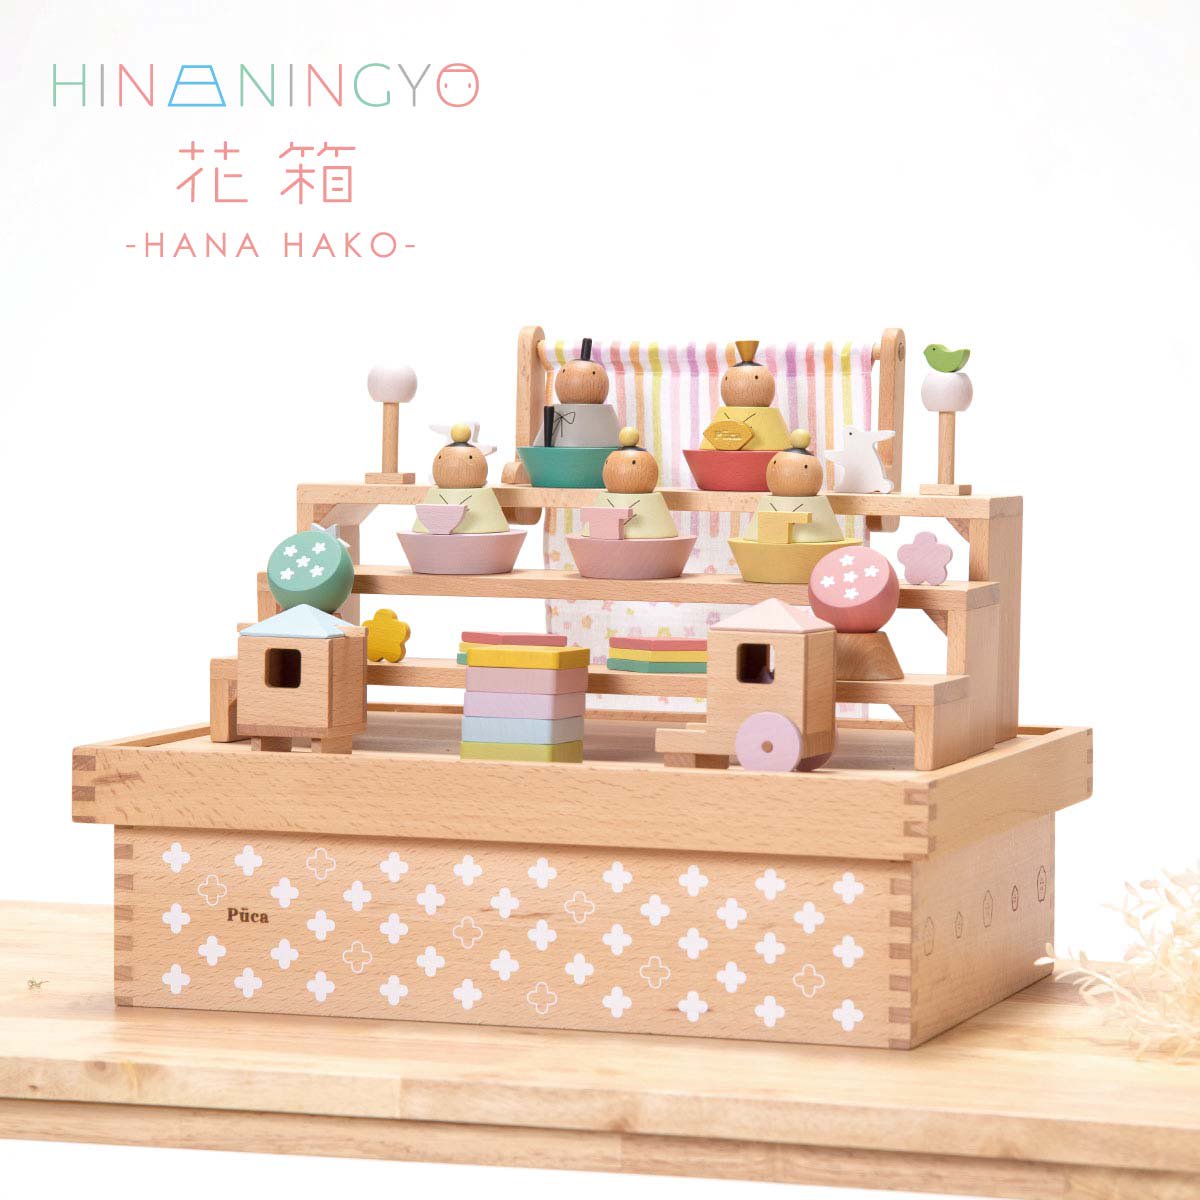 プーカのひな人形収納箱 puca hina HAKO 積み木 木製